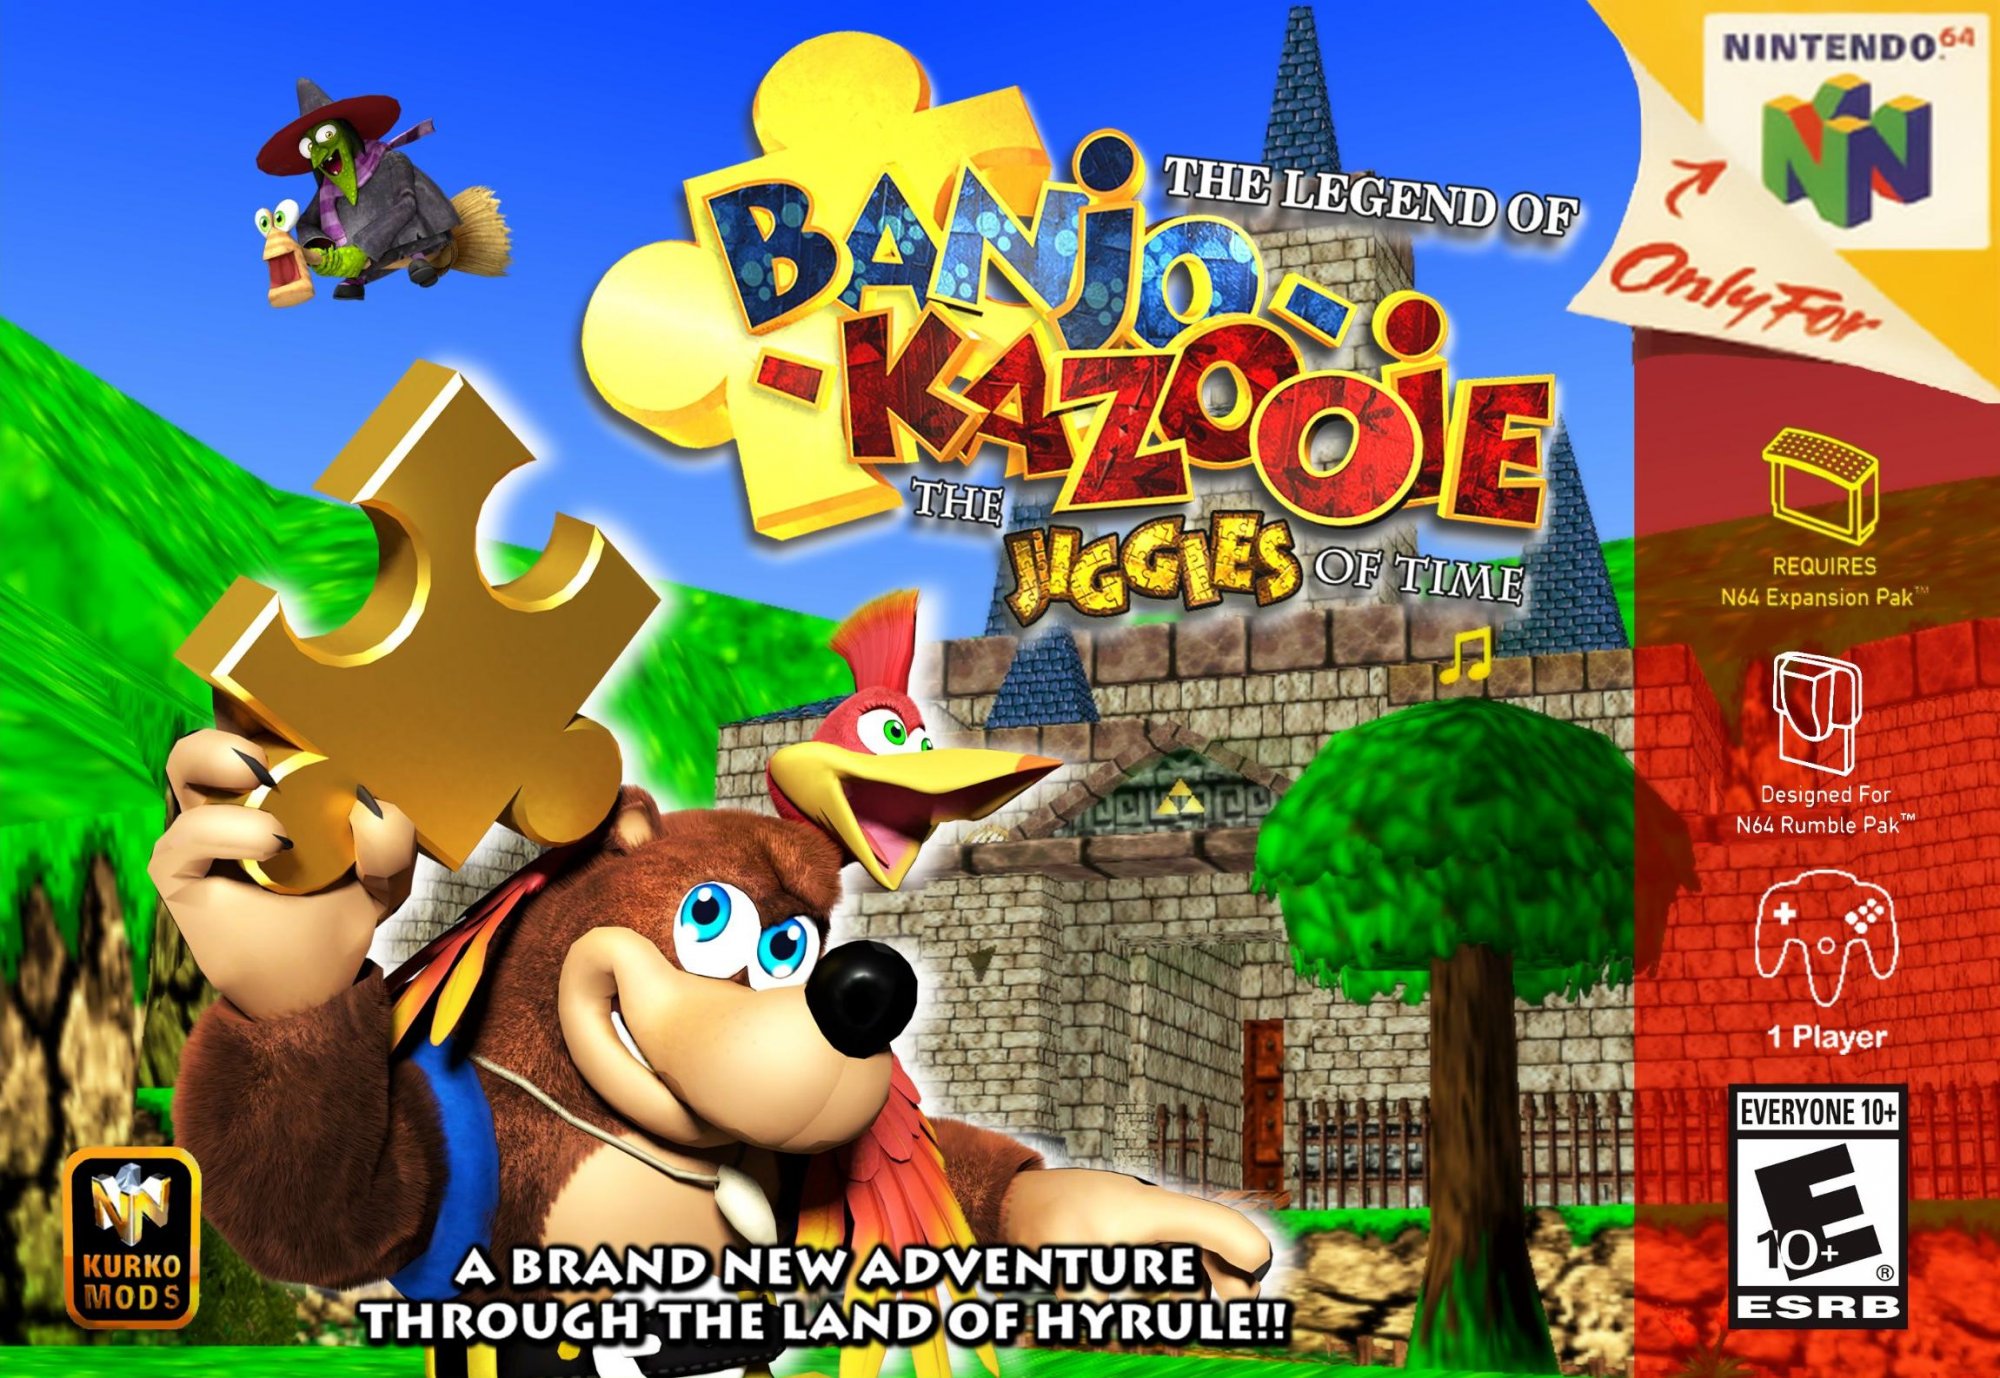 Banjo To Kazooie No Daibouken 2 ROM - N64 Download - Emulator Games